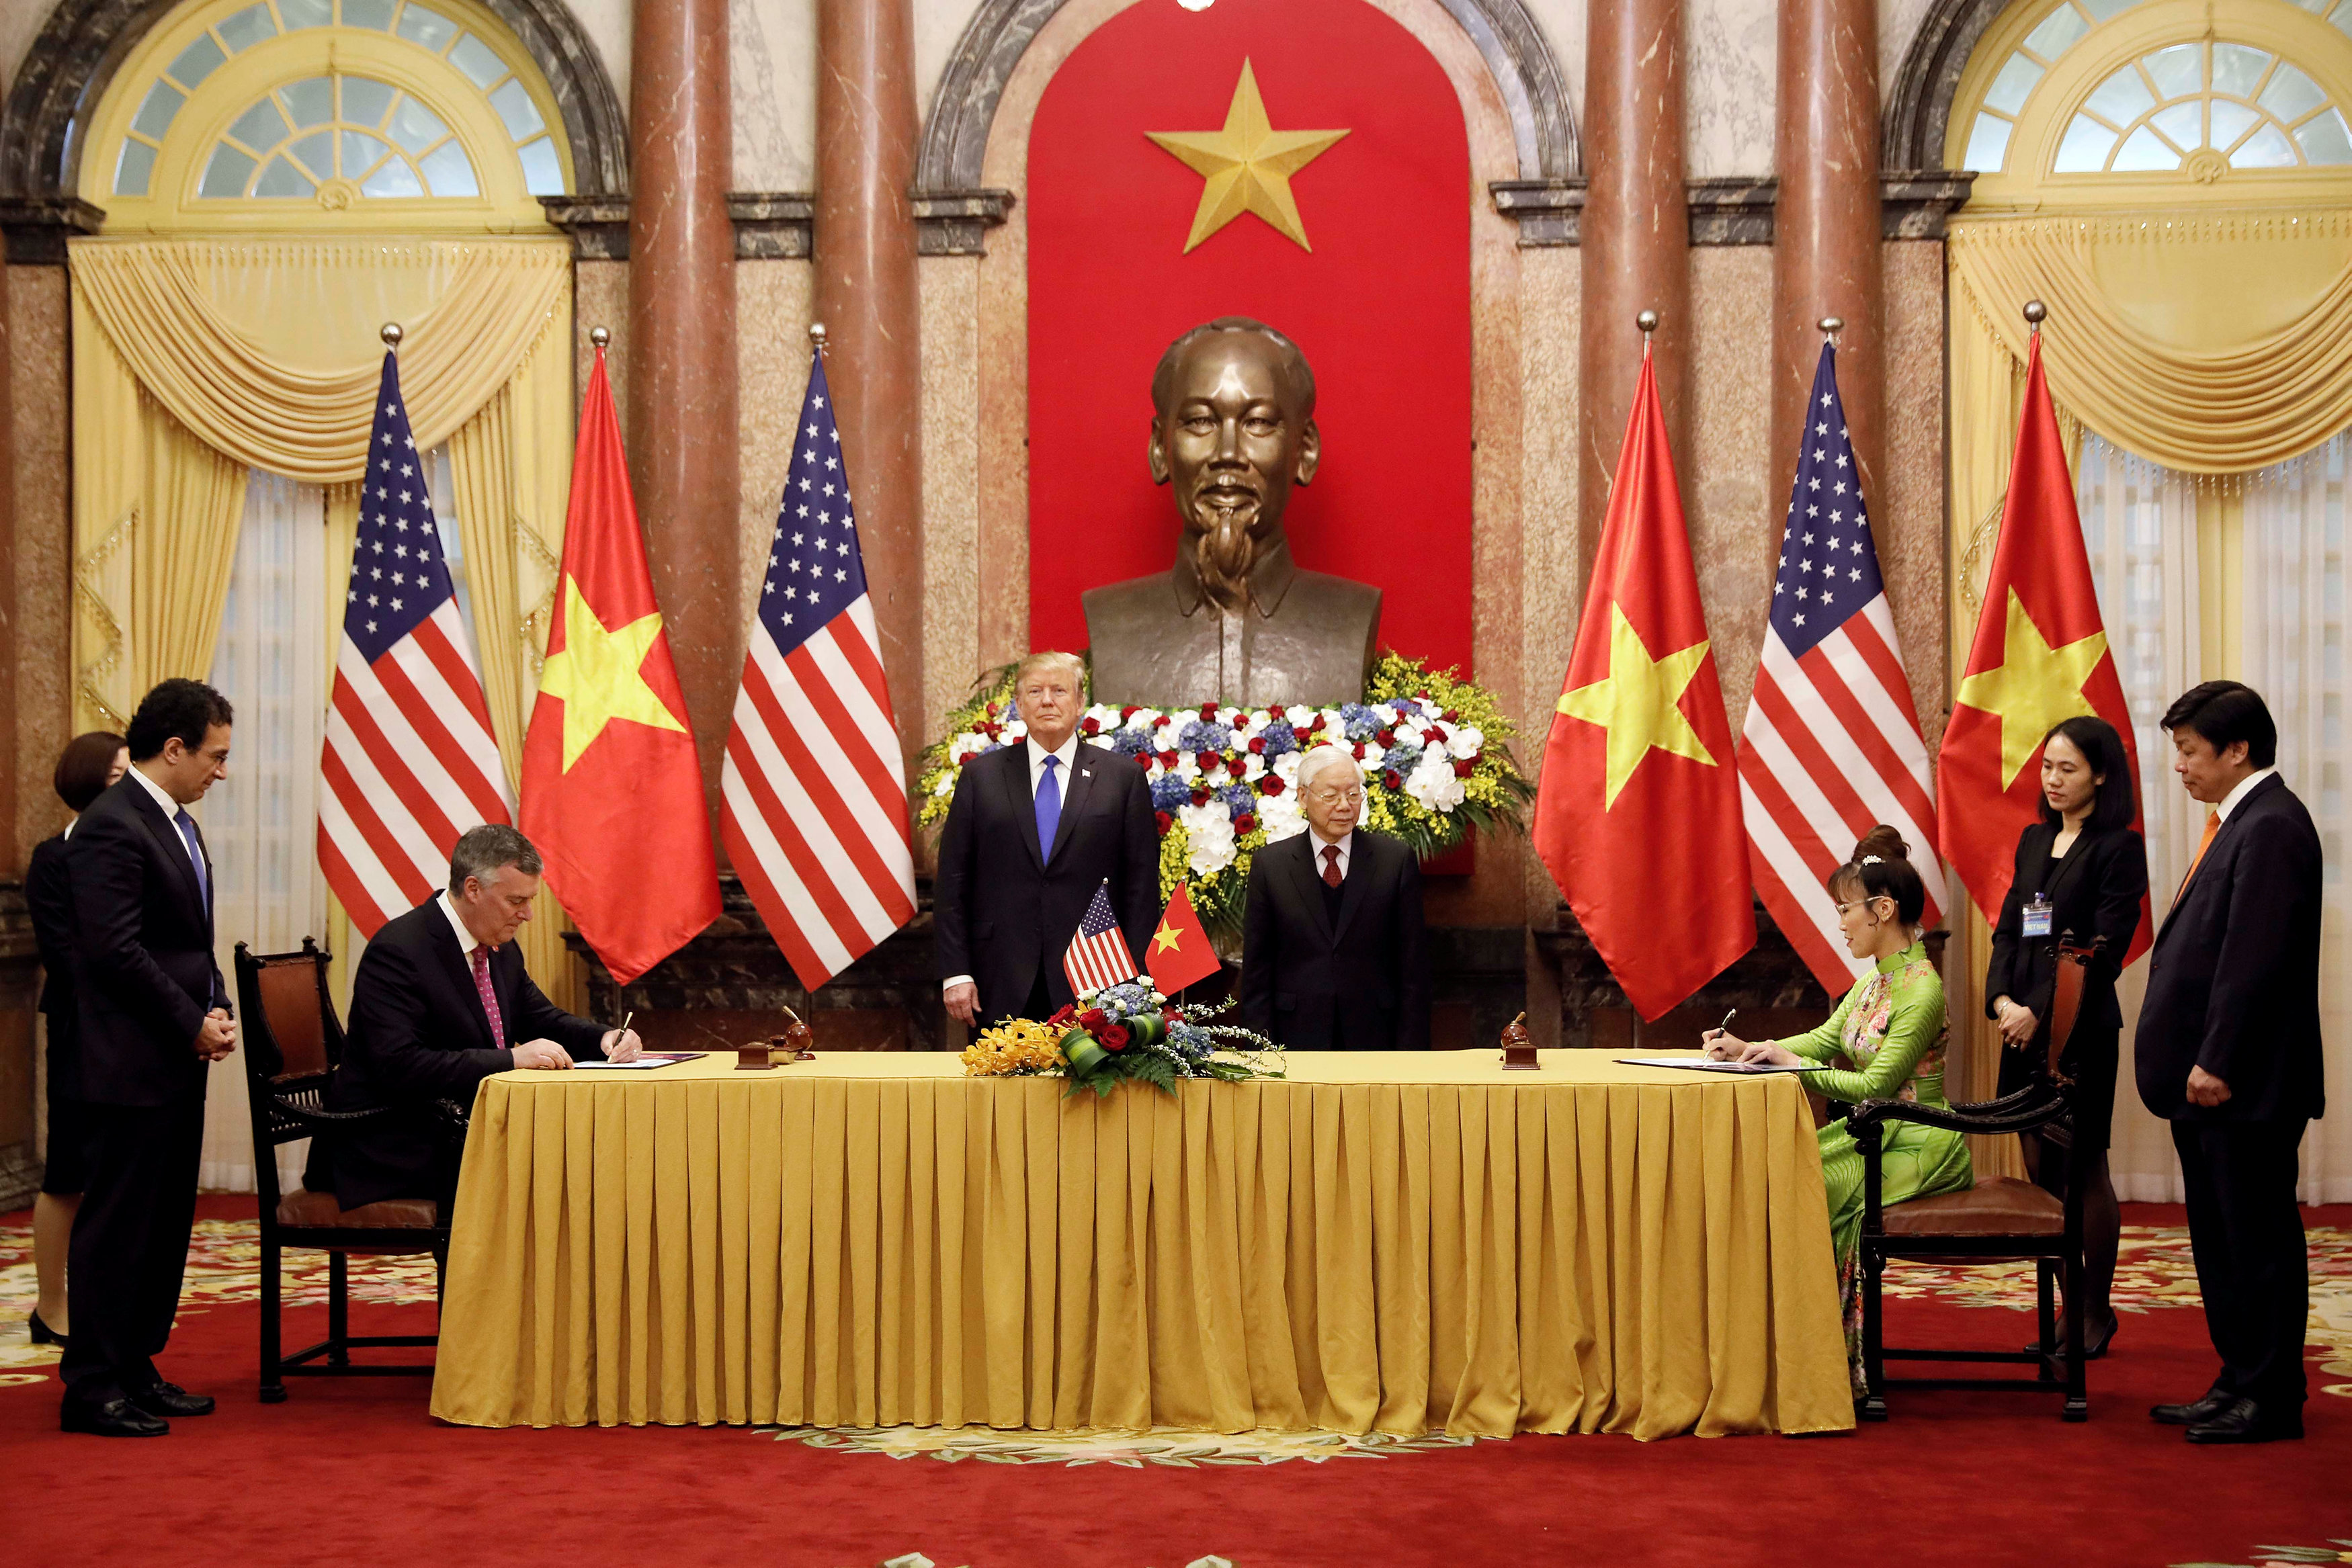 توقيع اتفاقات بين أمريكا وفيتنام على هامش زيارة ترامب لهانوى